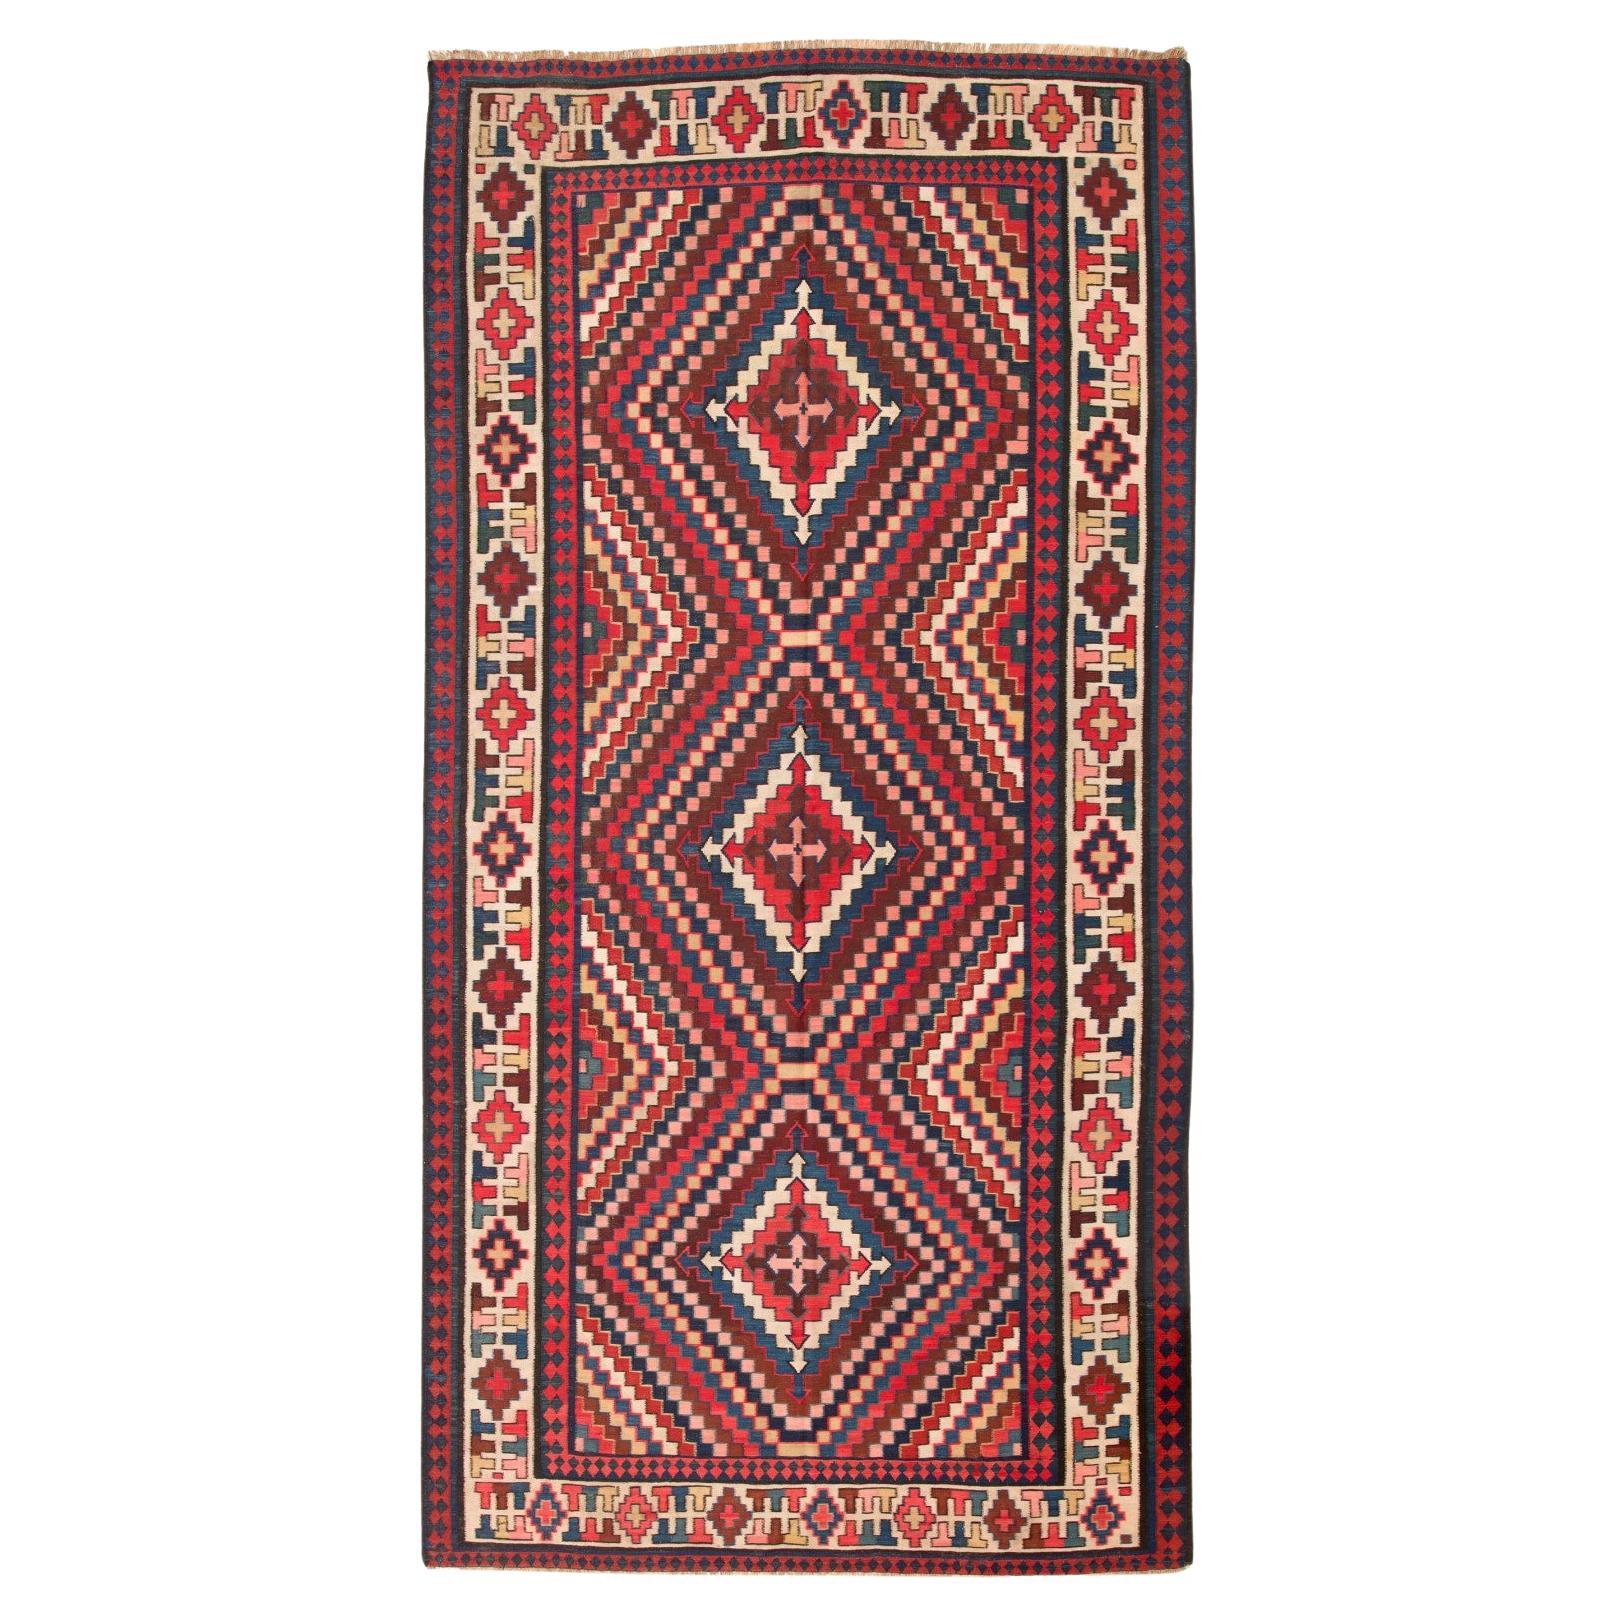 Tapis Kilim du Caucase antique talish, tapis du Caucase